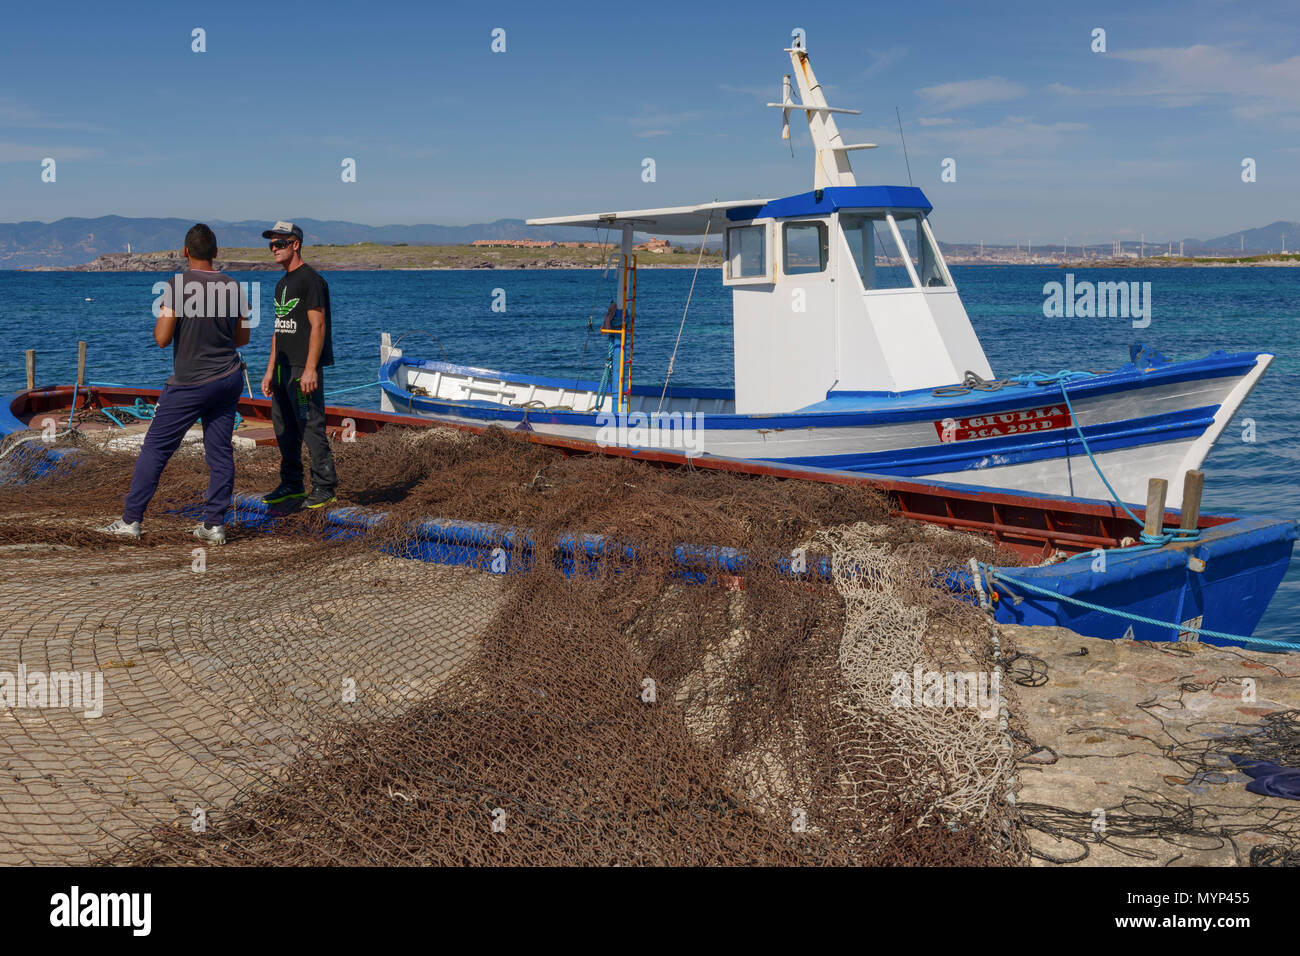 Carloforte, Isola di San Pietro, Italia - 08 Maggio 2014: 'Mattanza' è un'antica tecnica di pesca basati su reti. In Sardegna (Italia meridionale) ci siamo Foto Stock